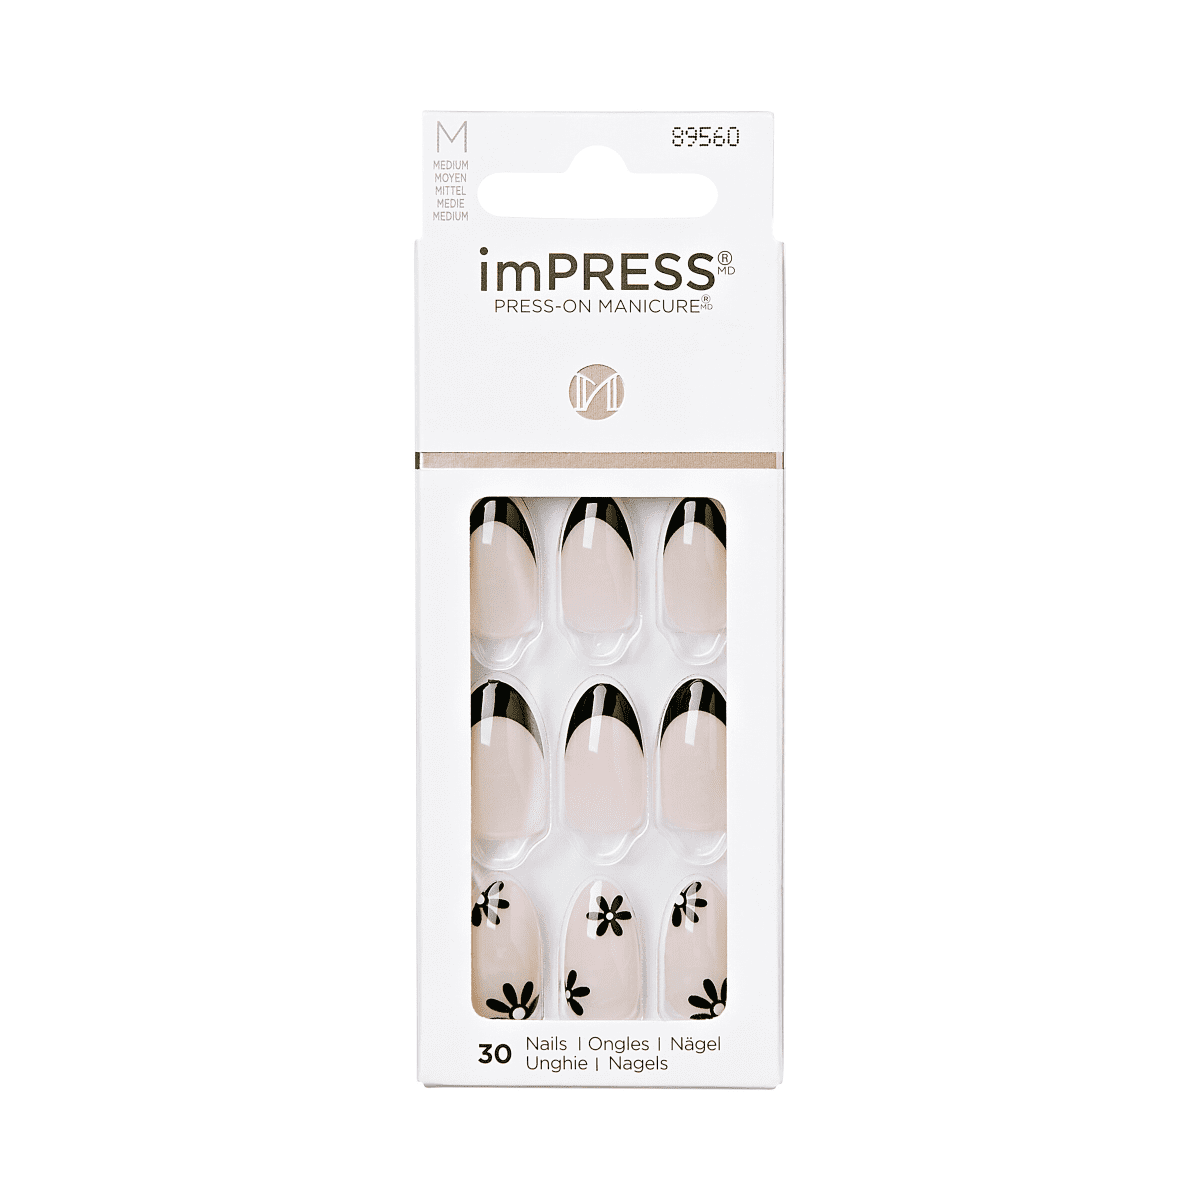 imPRESS Press-On Manicure - Brave Hearts